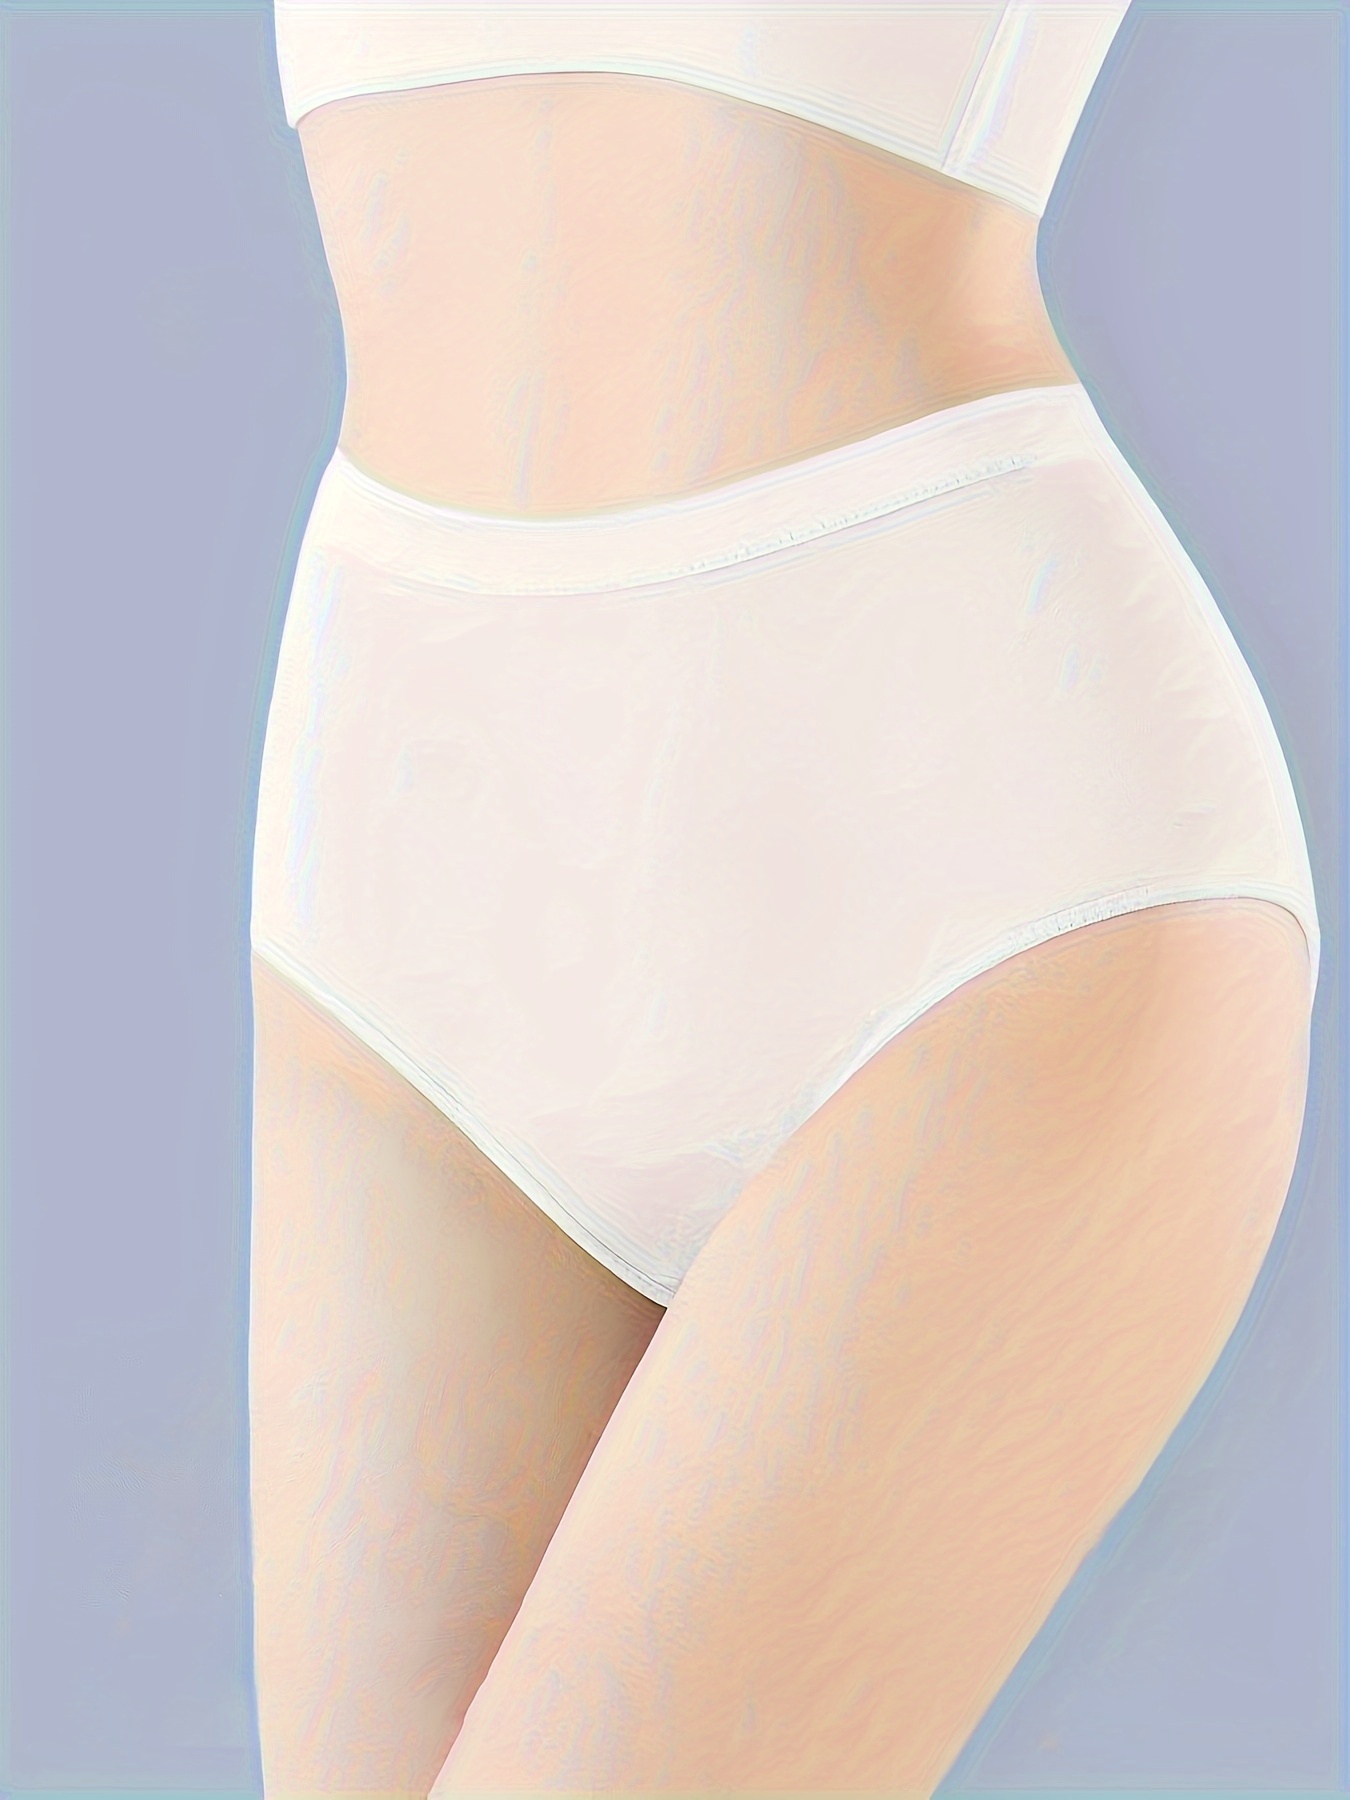 INNERSY Womens Underwear Cotton Briefs Postpartum High Waisted Panties 5  Pack, Vintage, M price in UAE,  UAE